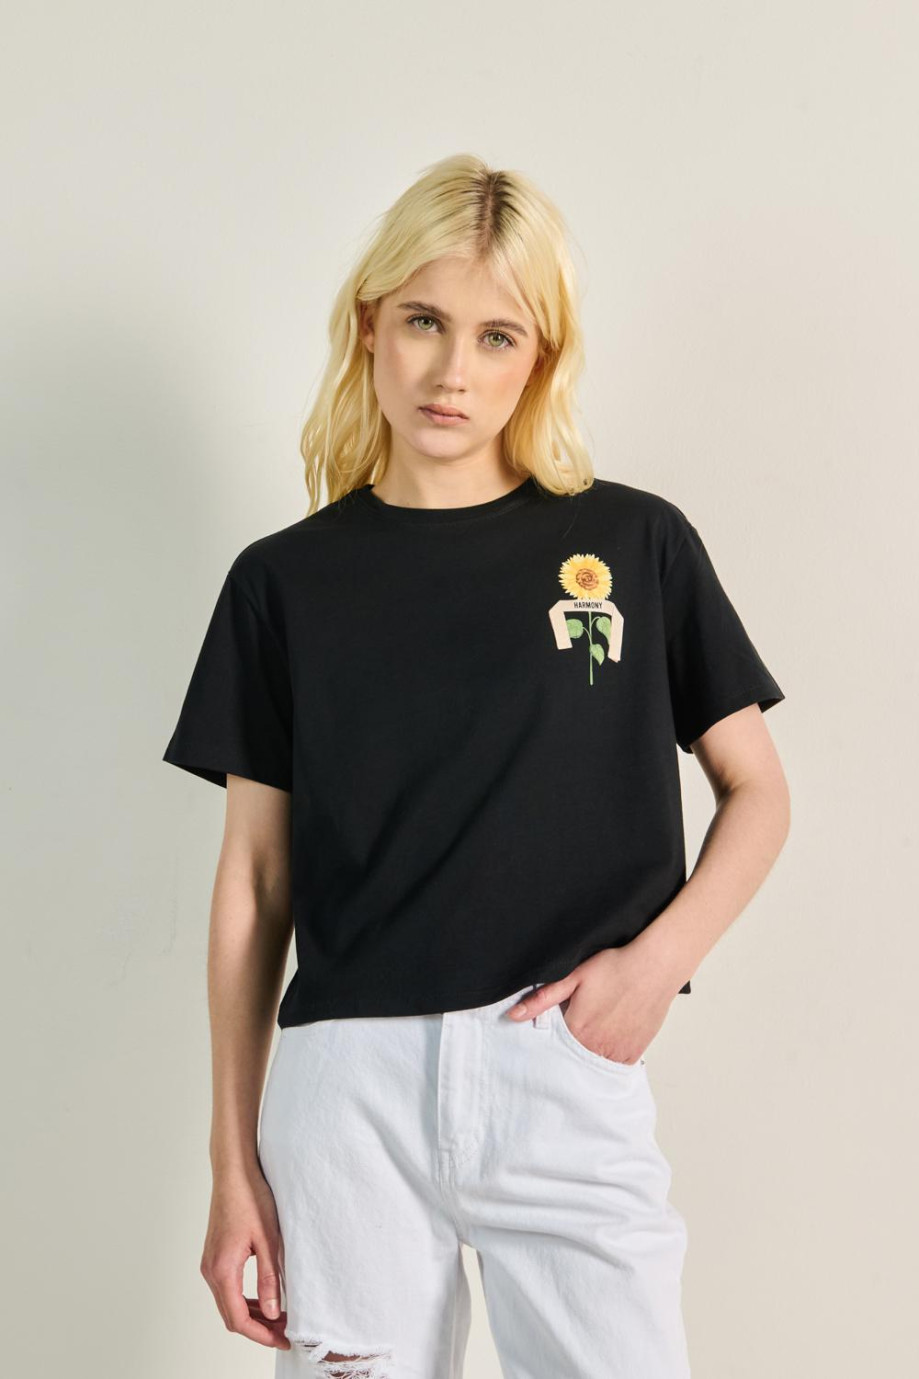 Camiseta crop top unicolor con diseño de flor en frente